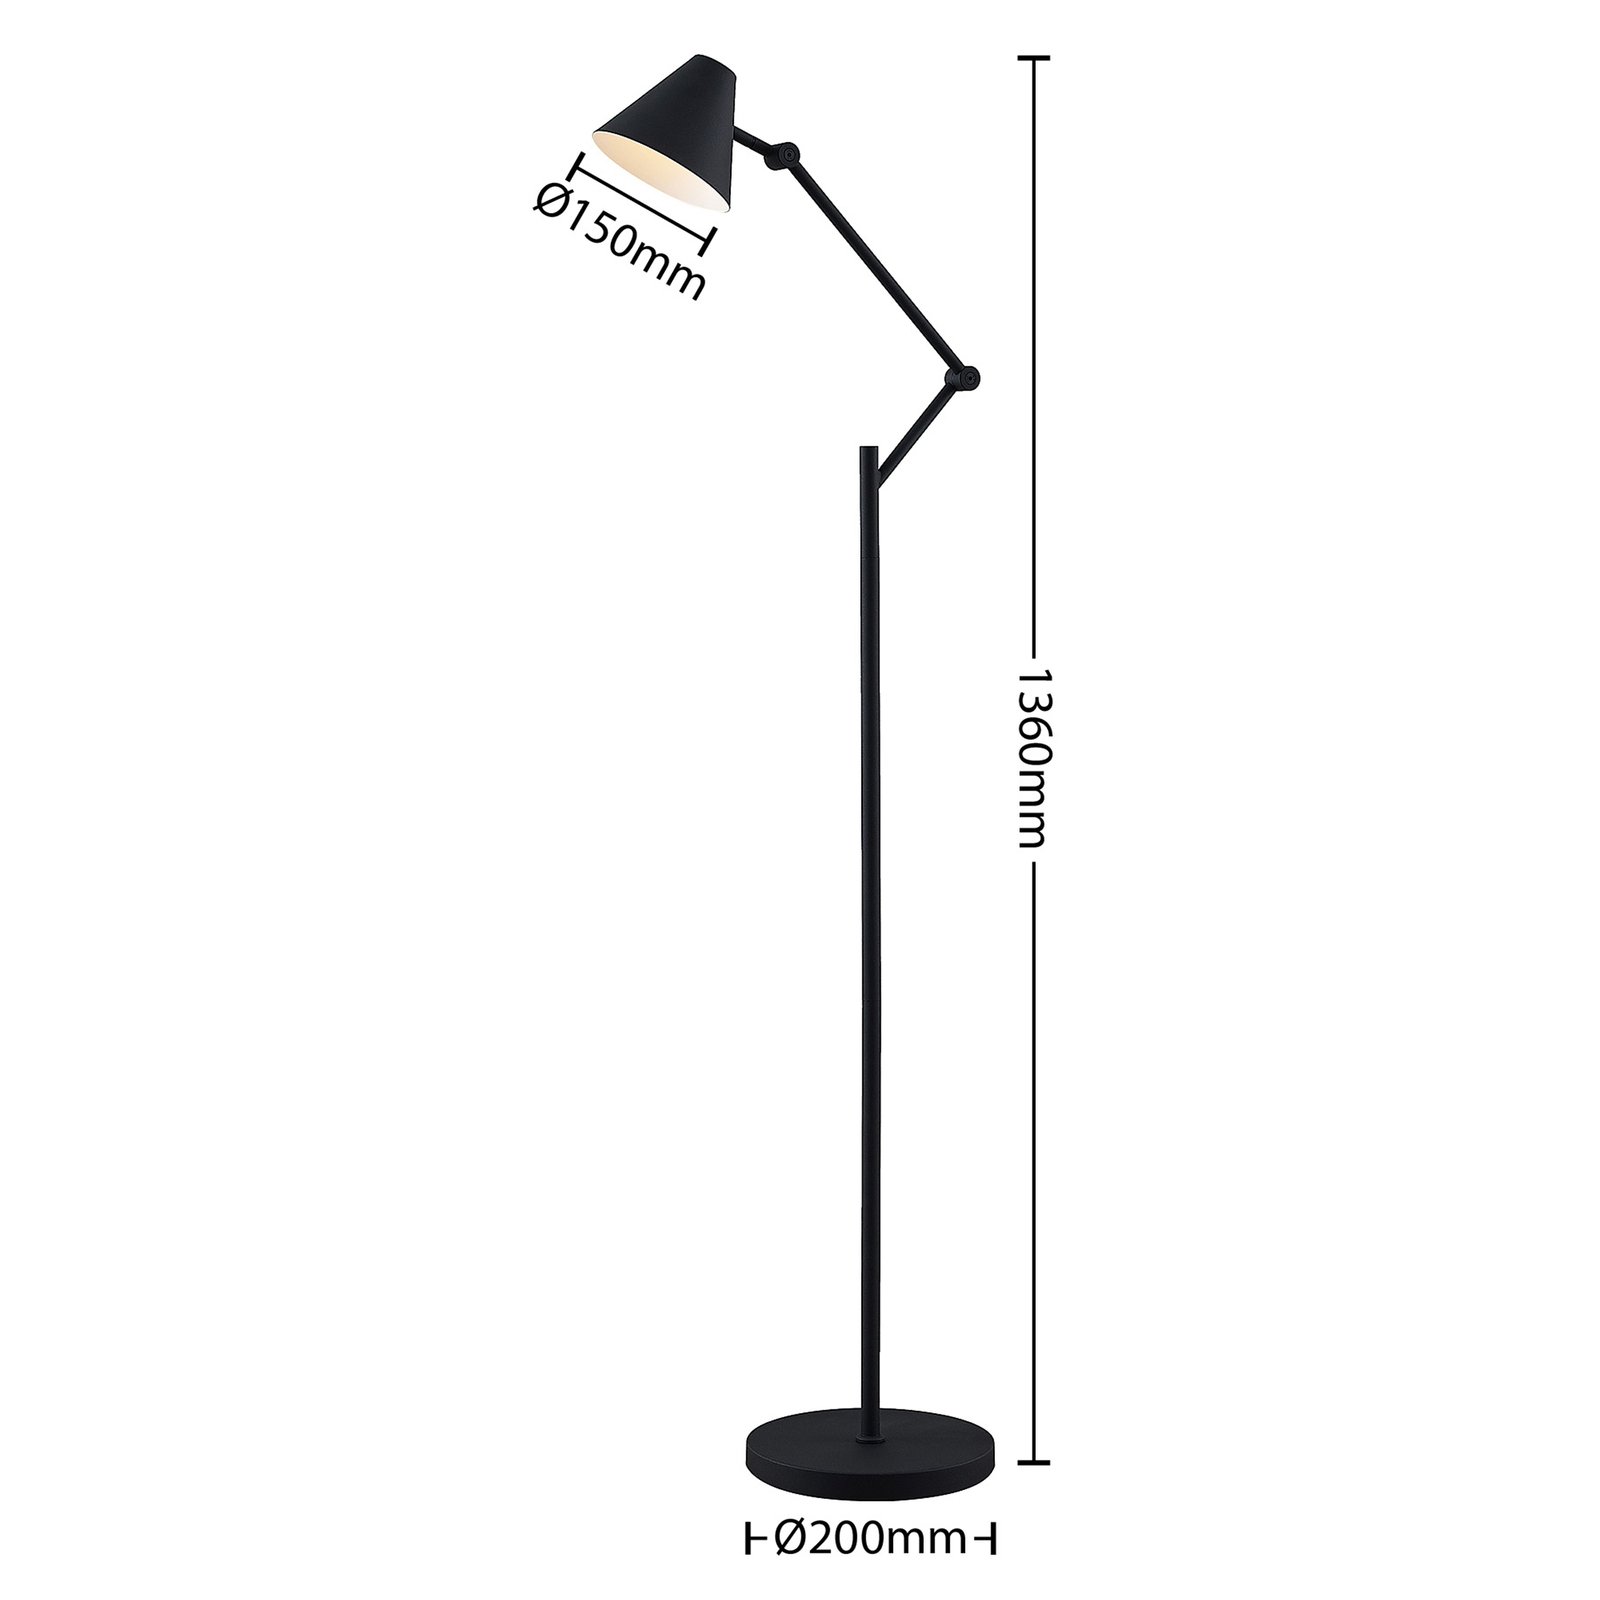 Lucande Phina stojací lampa v černé, nastavitelná